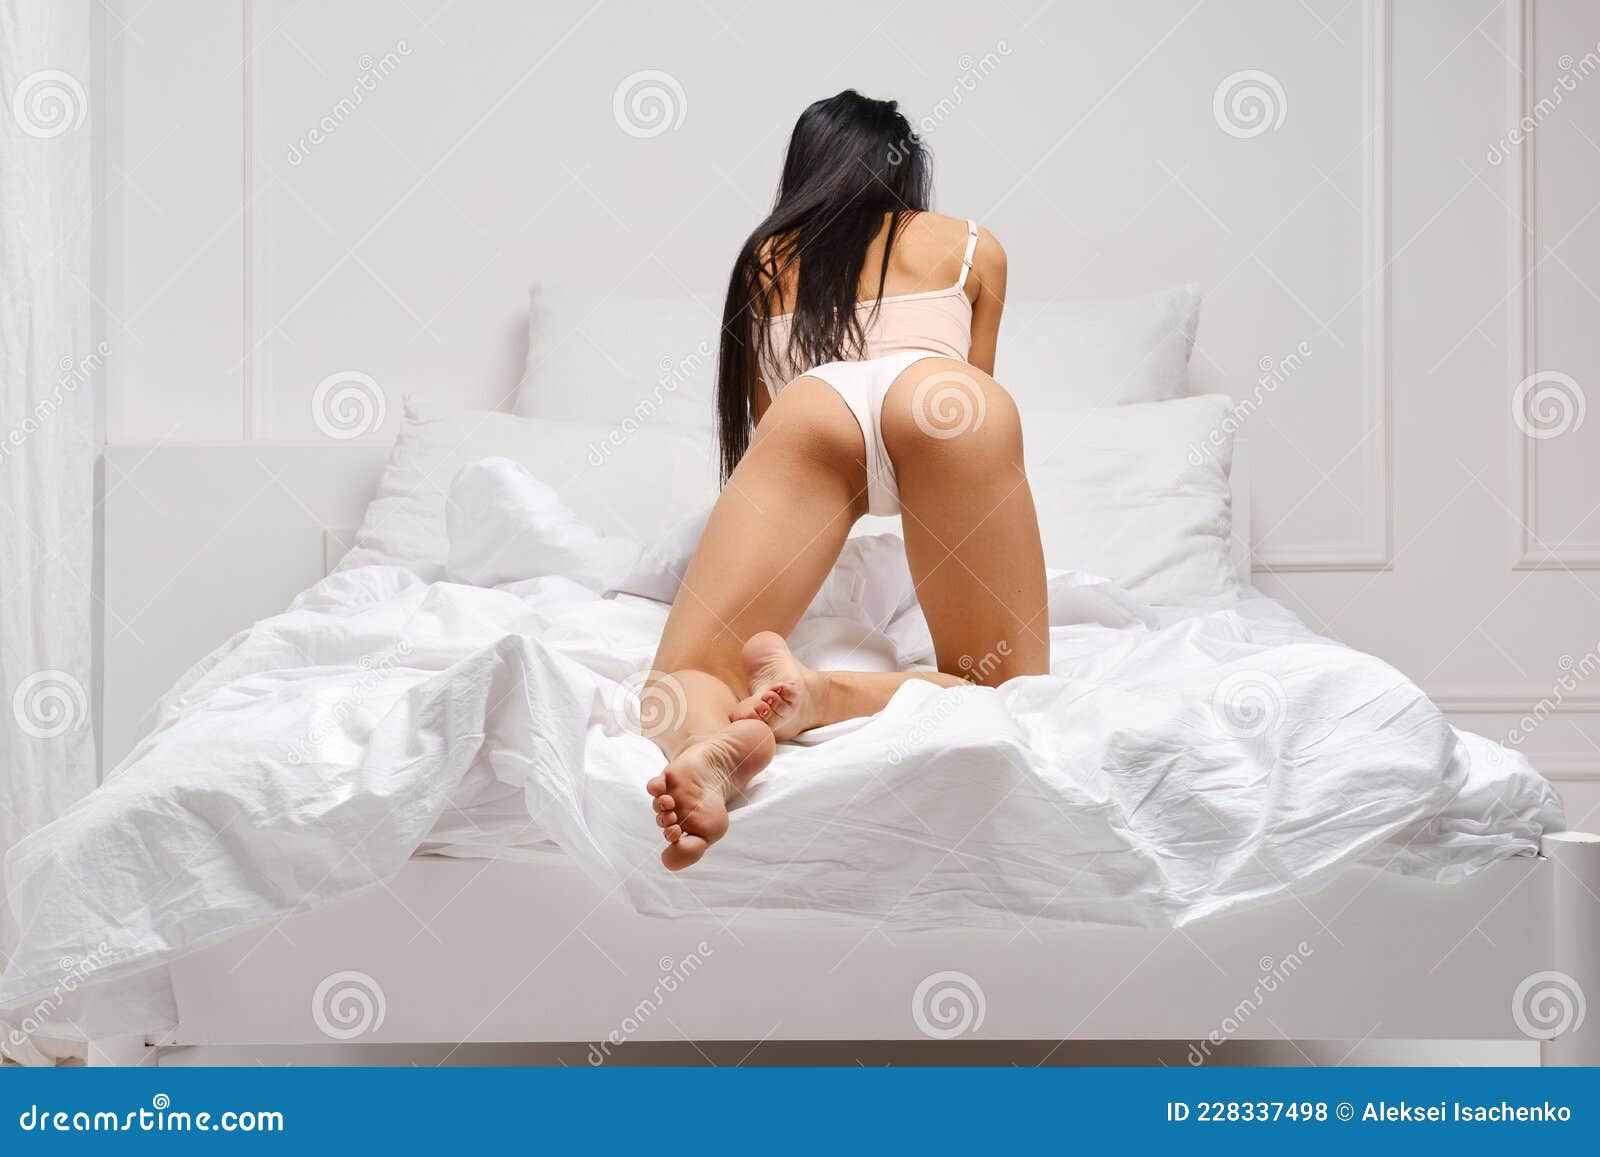 Chica masturbandose en la cama